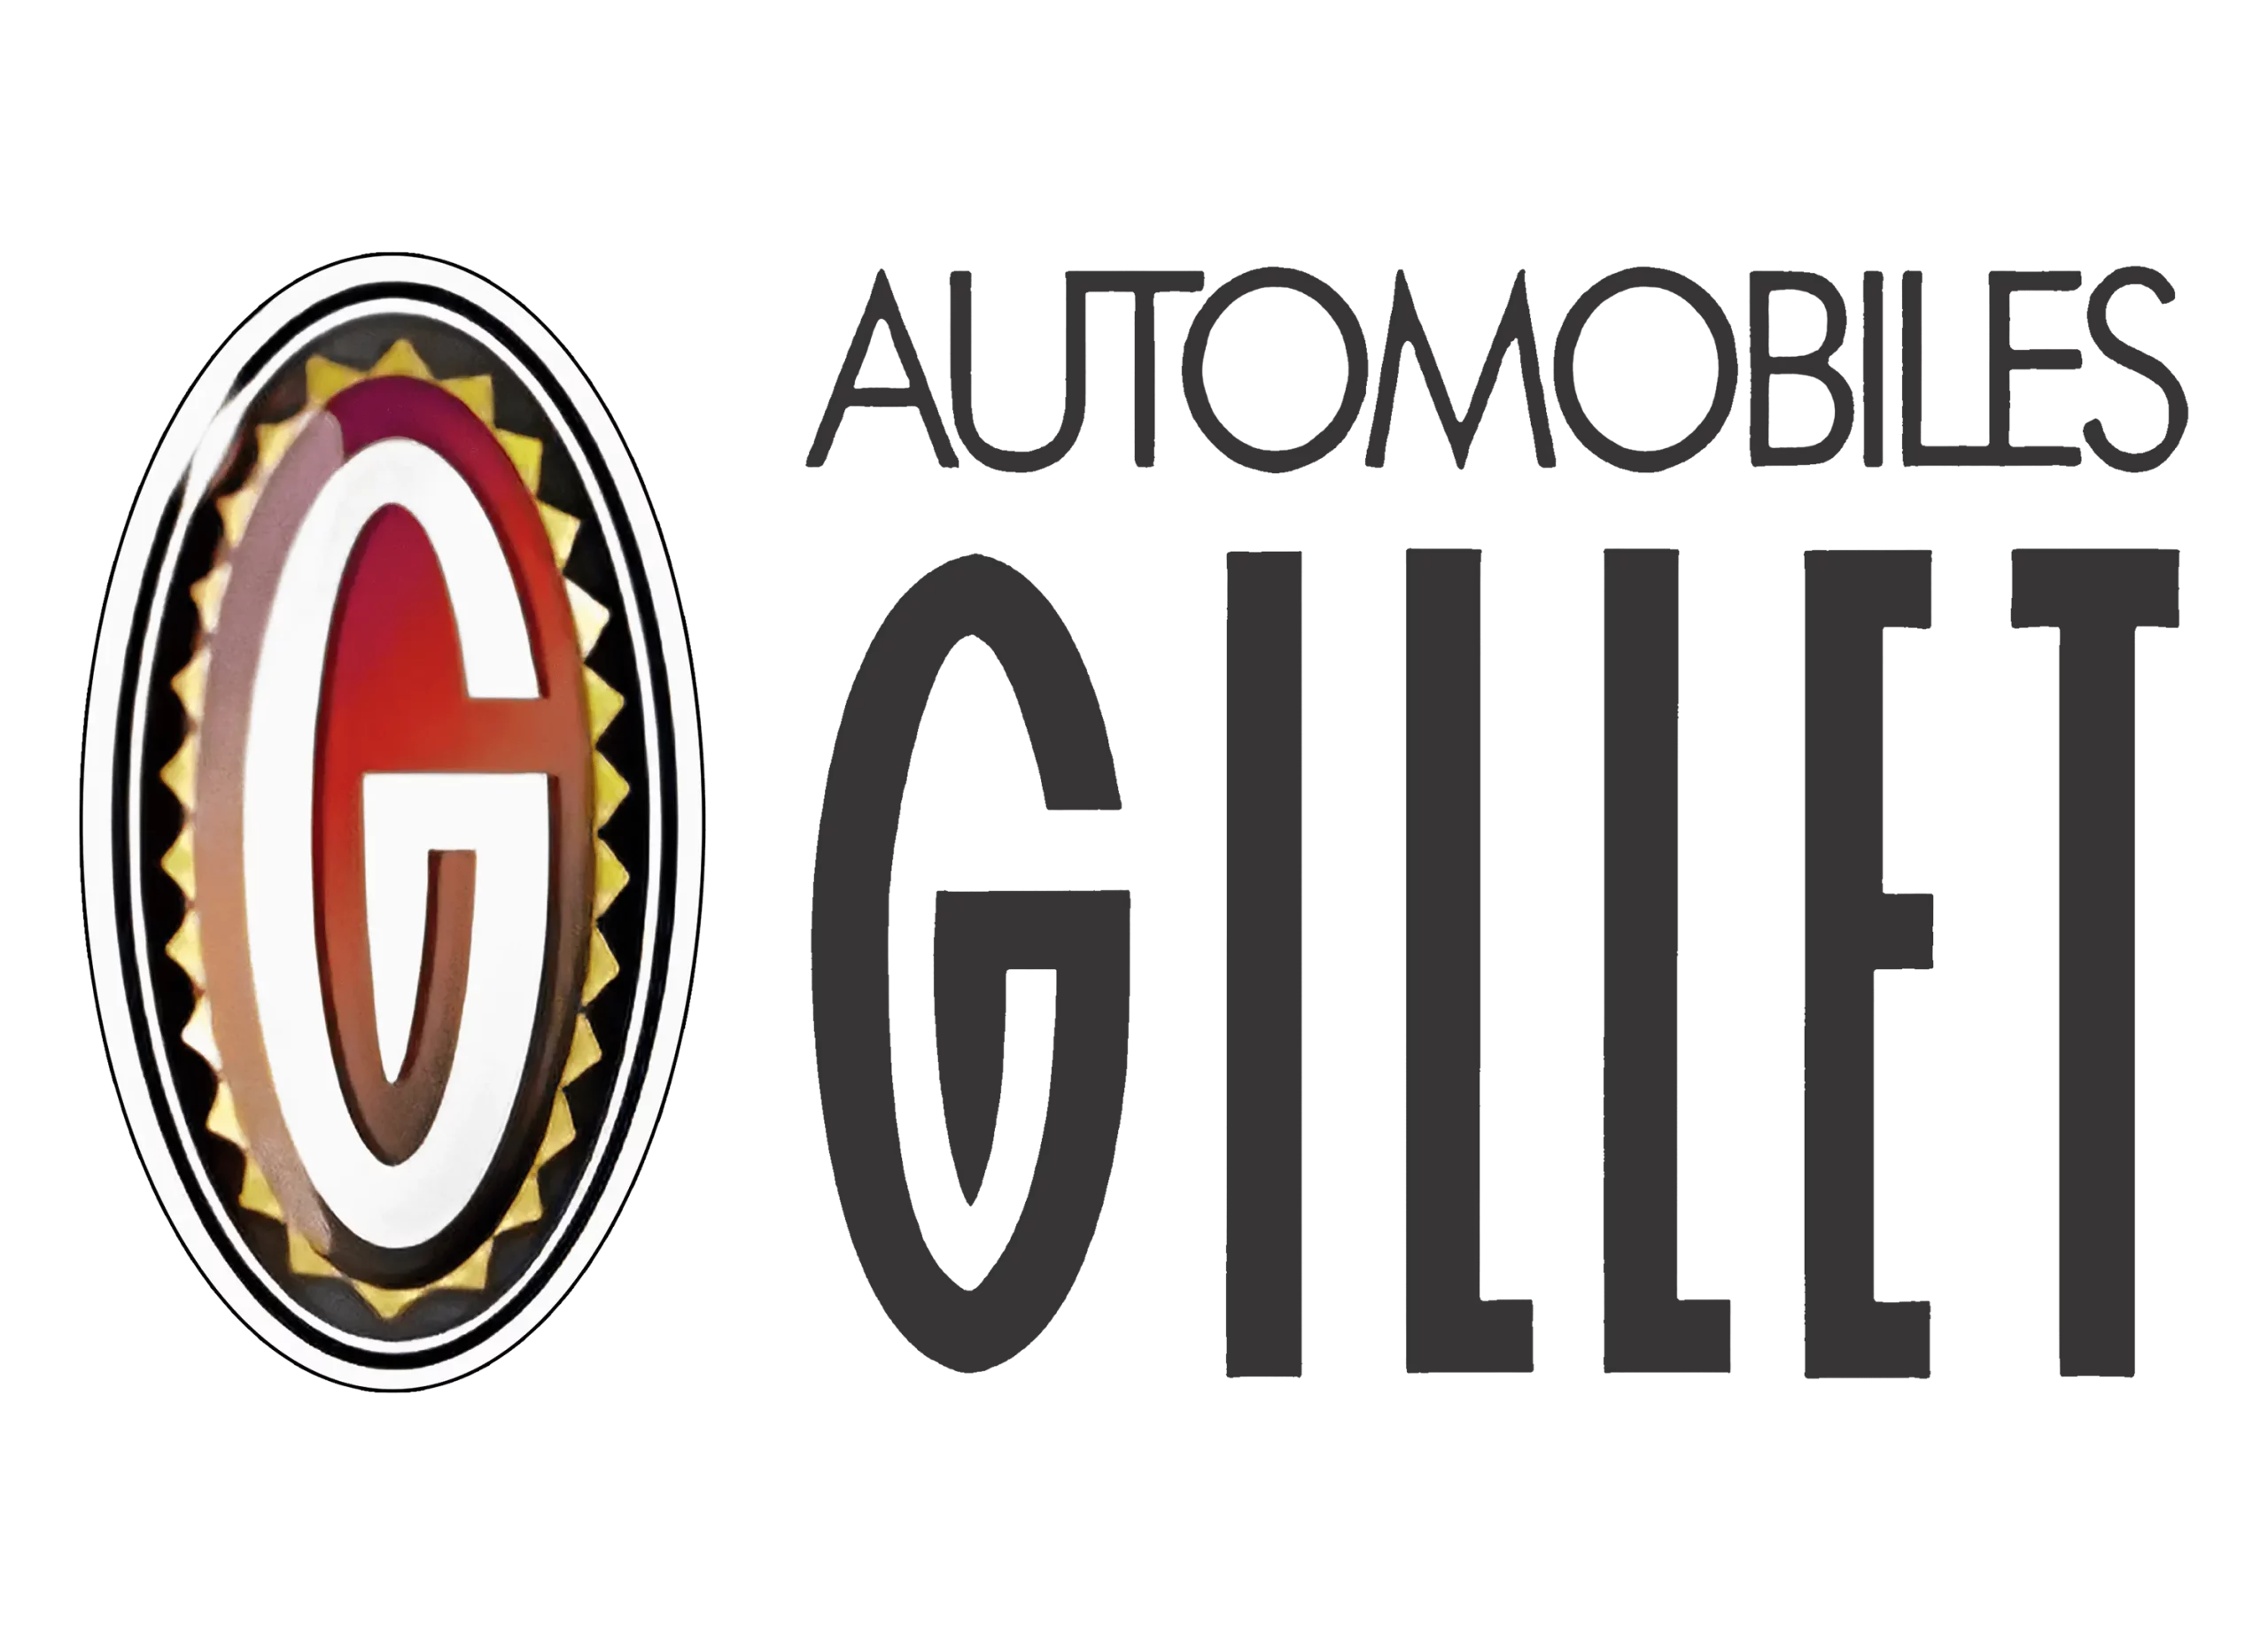 Gillet logo 1994-present